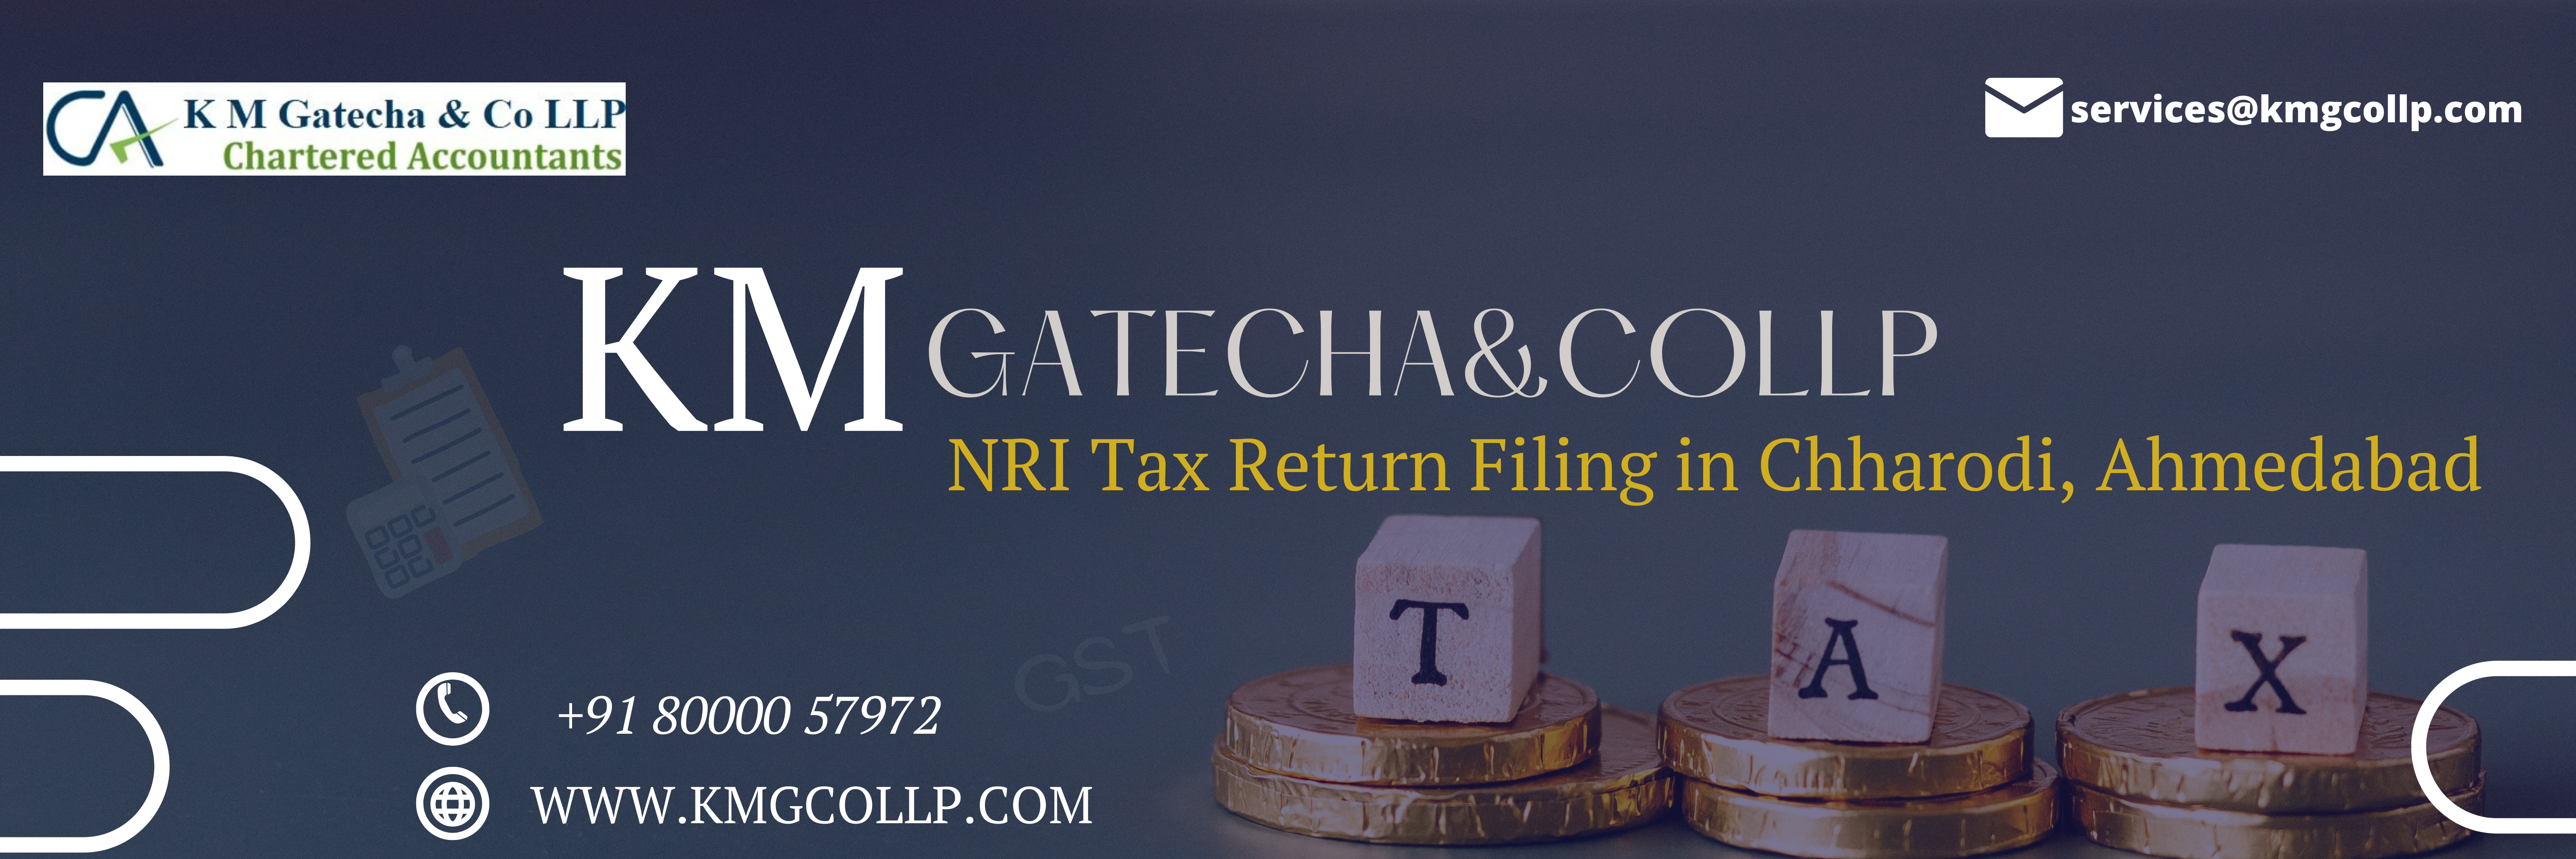 NRI Tax Return Filing in Chharodi, Ahmedabad